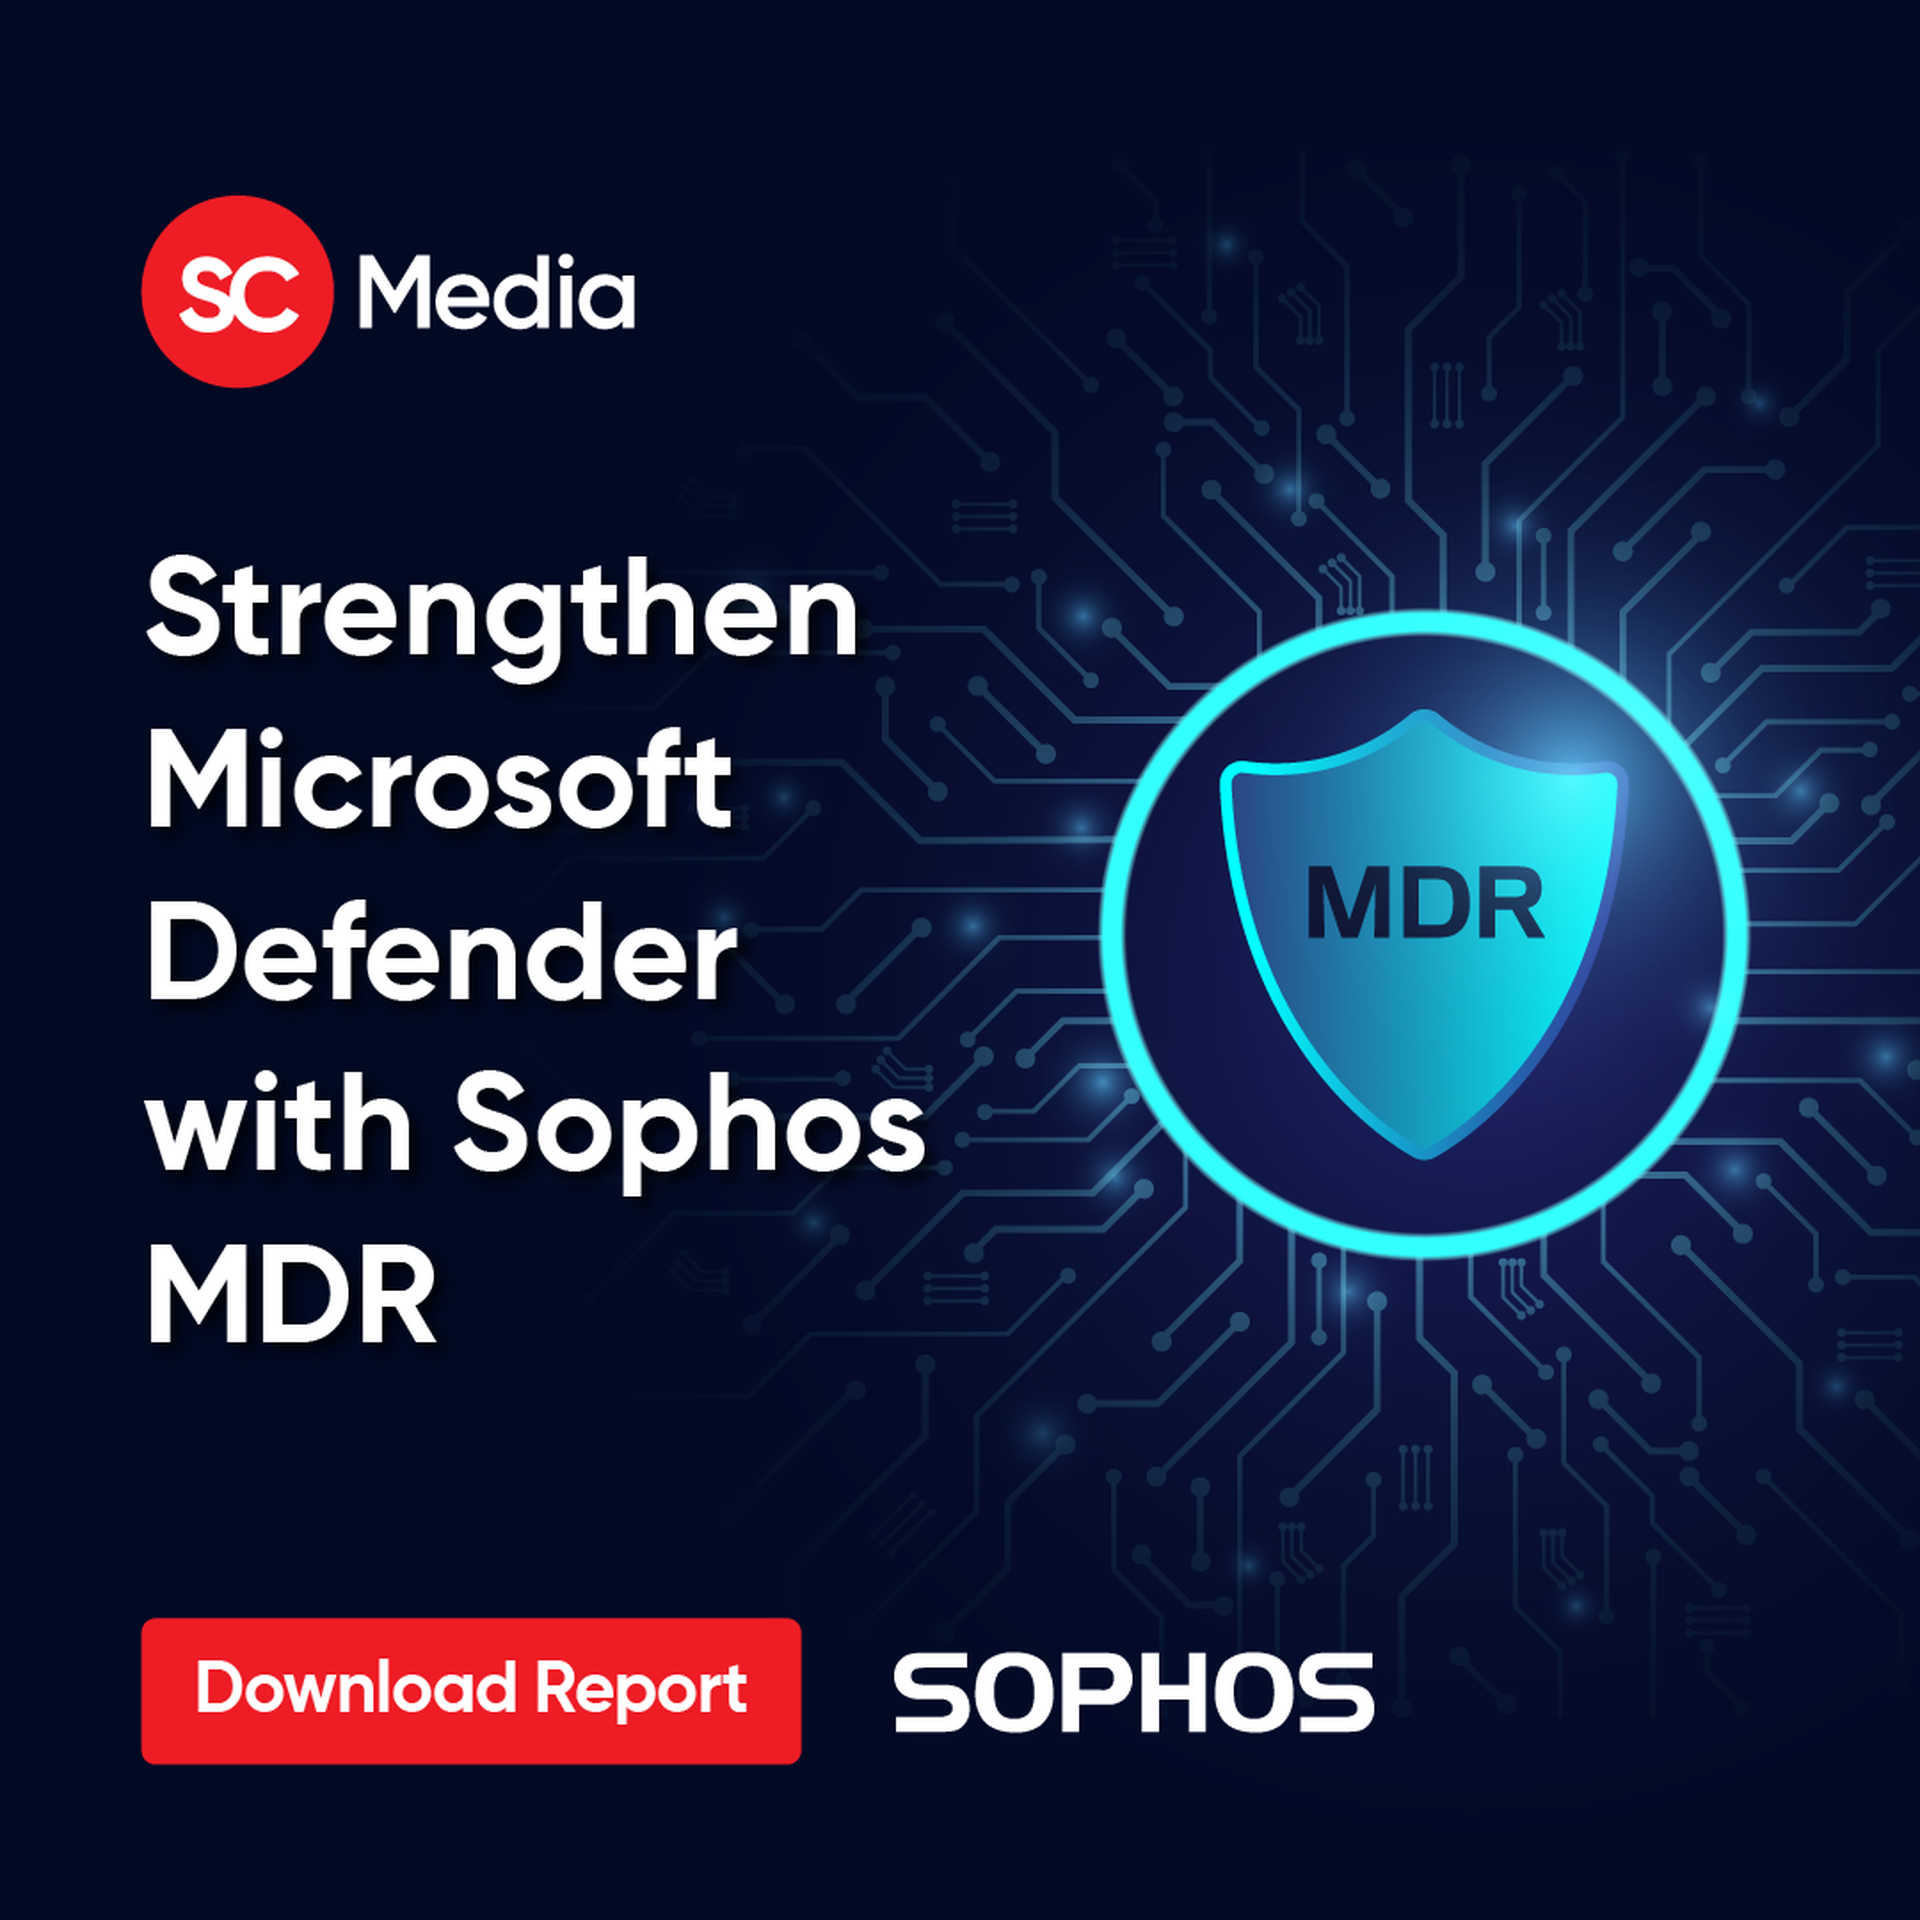 Strengthen Microsoft Defender with Sophos MDR